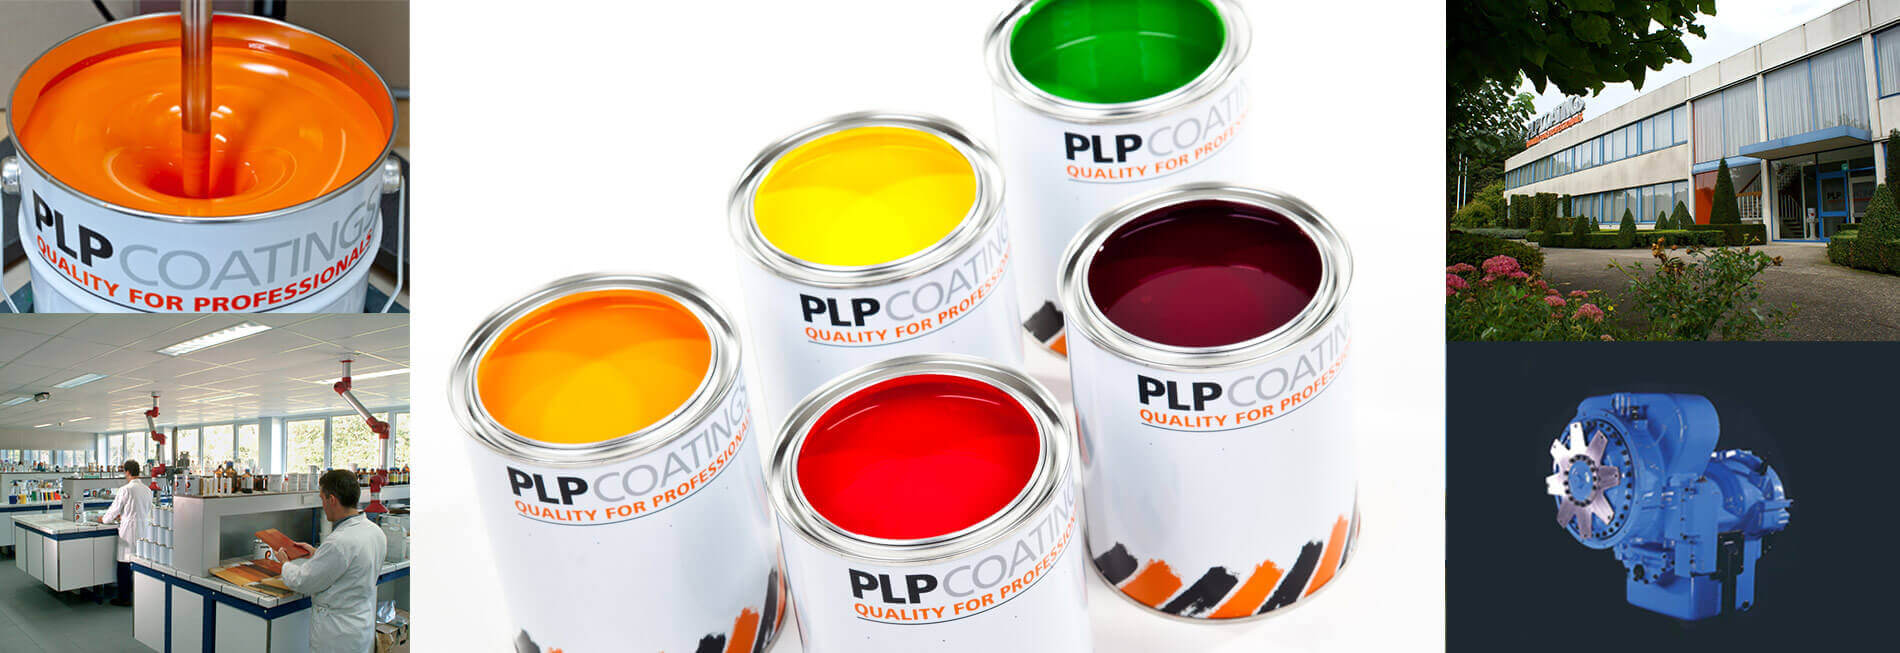 plp-coatings-collage